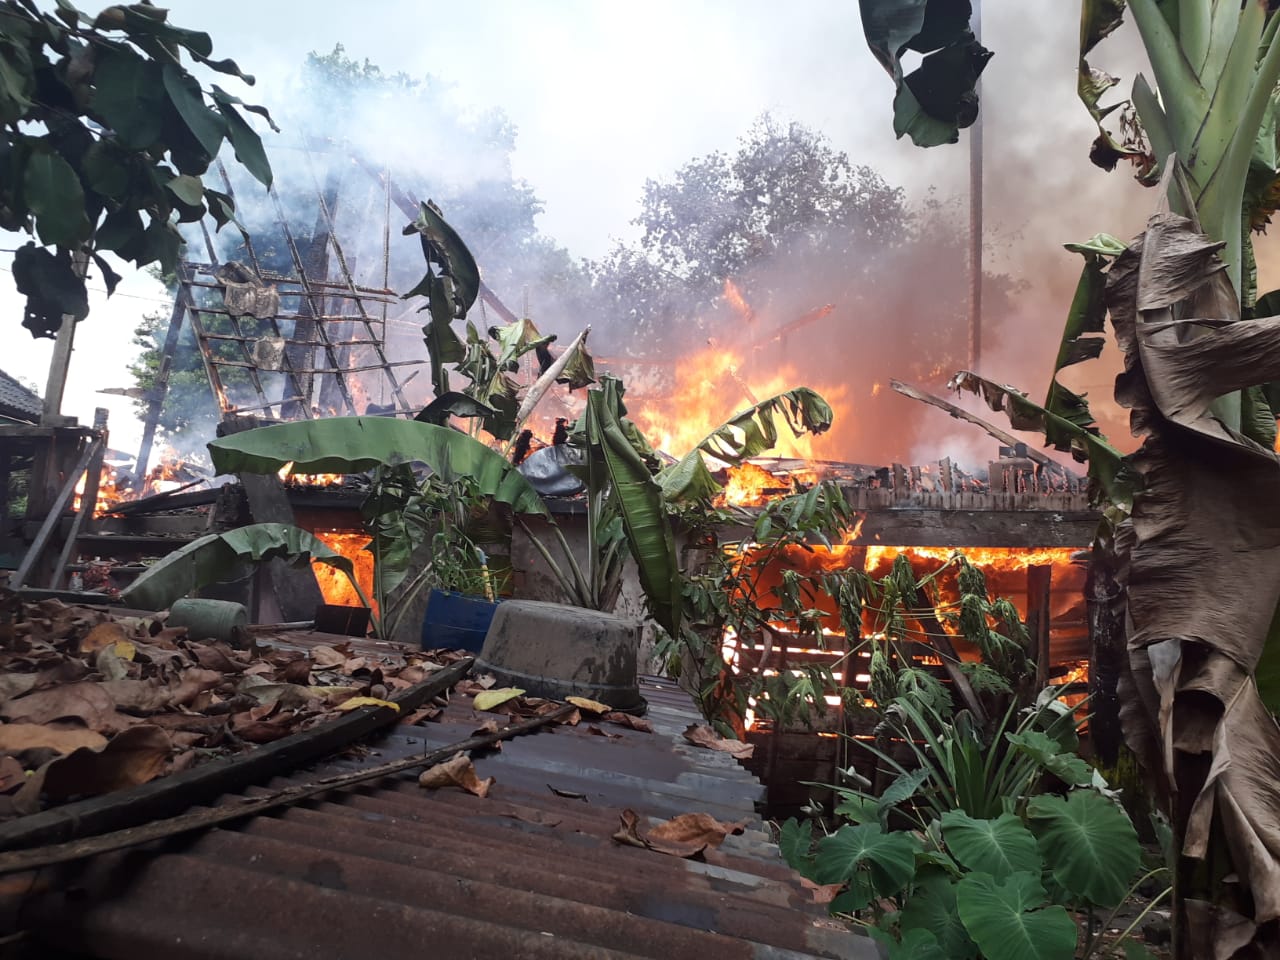 Kebakaran di Gunung Megang, Dua Rumah Hangus